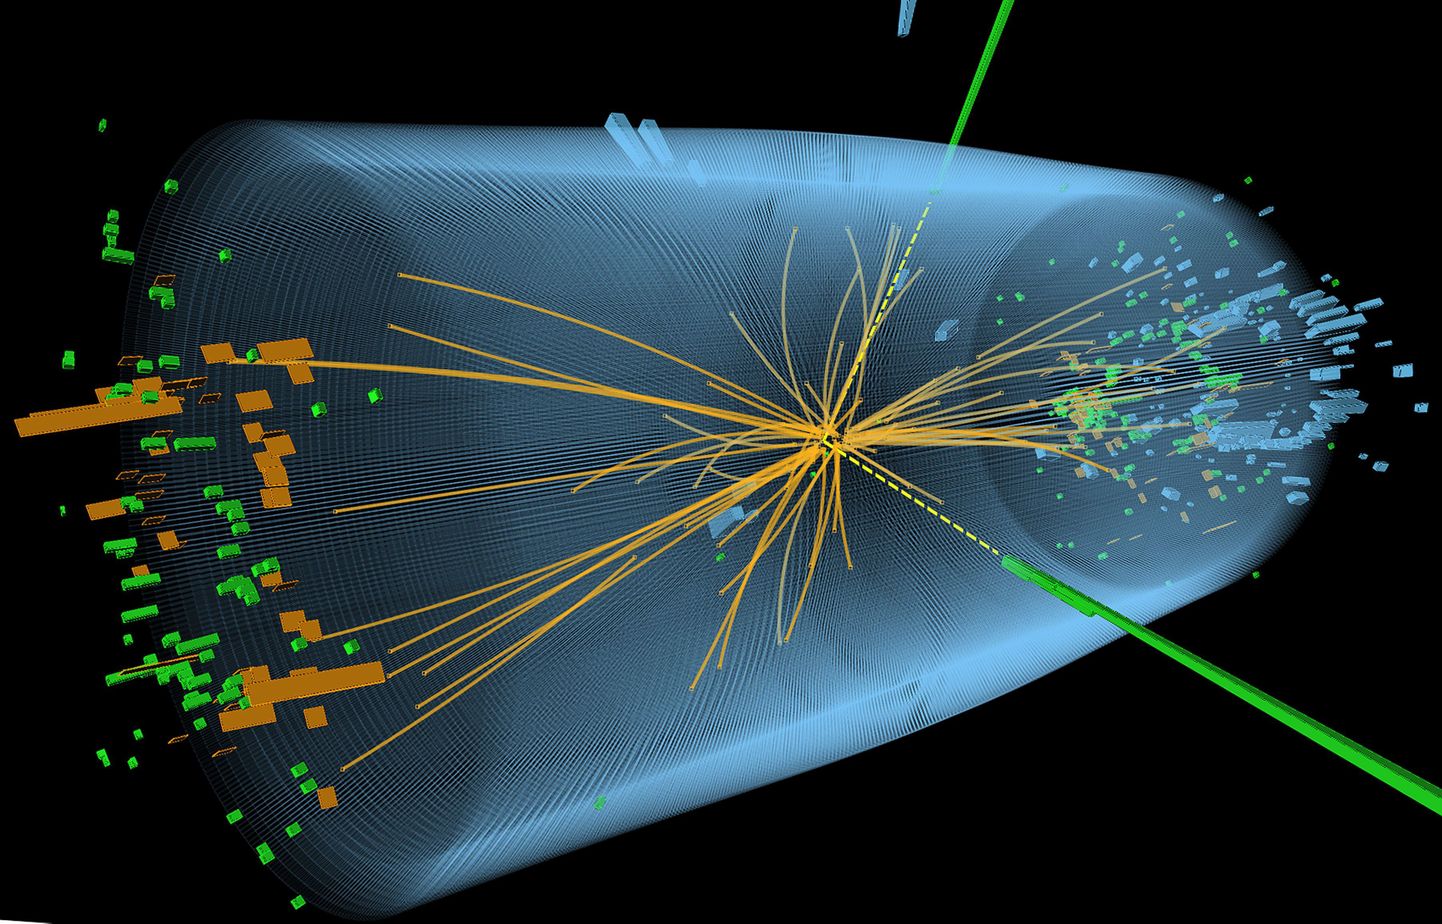 Pildil on näha Higgsi bosoni leidmiseks korraldatud CMS eksperimendi käigus tekkinud osakeste põrkumise jäljed.